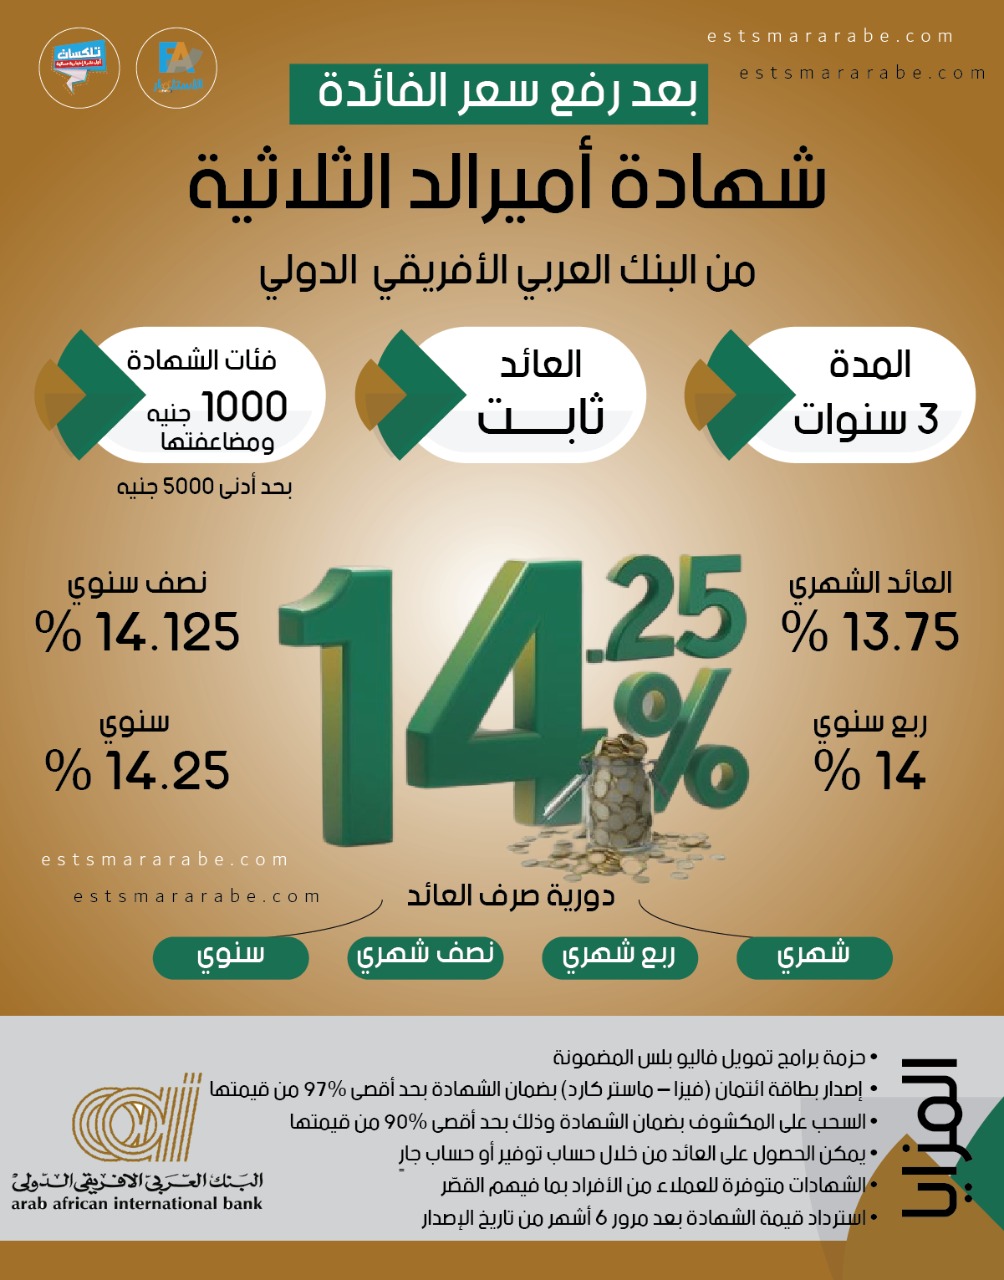 إنفوجرافيك|| تفاصيل فائدة شهادة «أميرالد» للبنك العربي الأفريقي الدولي